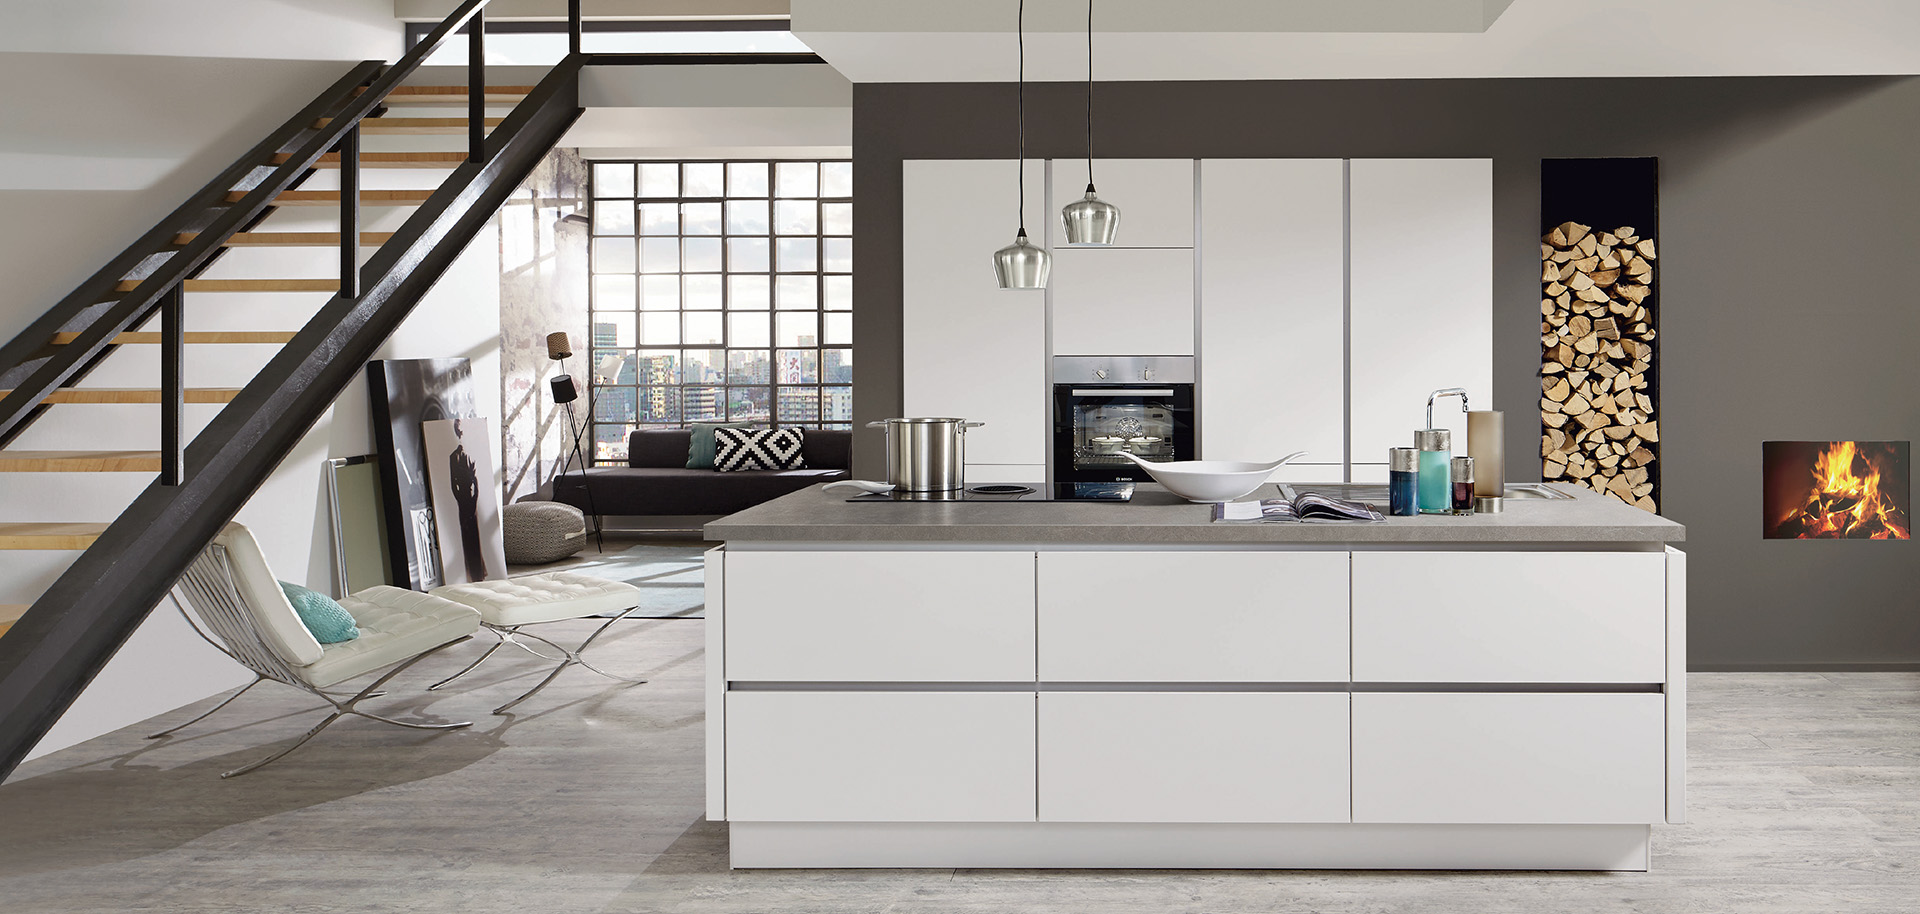 Intérieur de cuisine moderne avec des lignes épurées comprenant des armoires blanches, des appareils en acier inoxydable et un espace de vie confortable adjacent avec une cheminée.